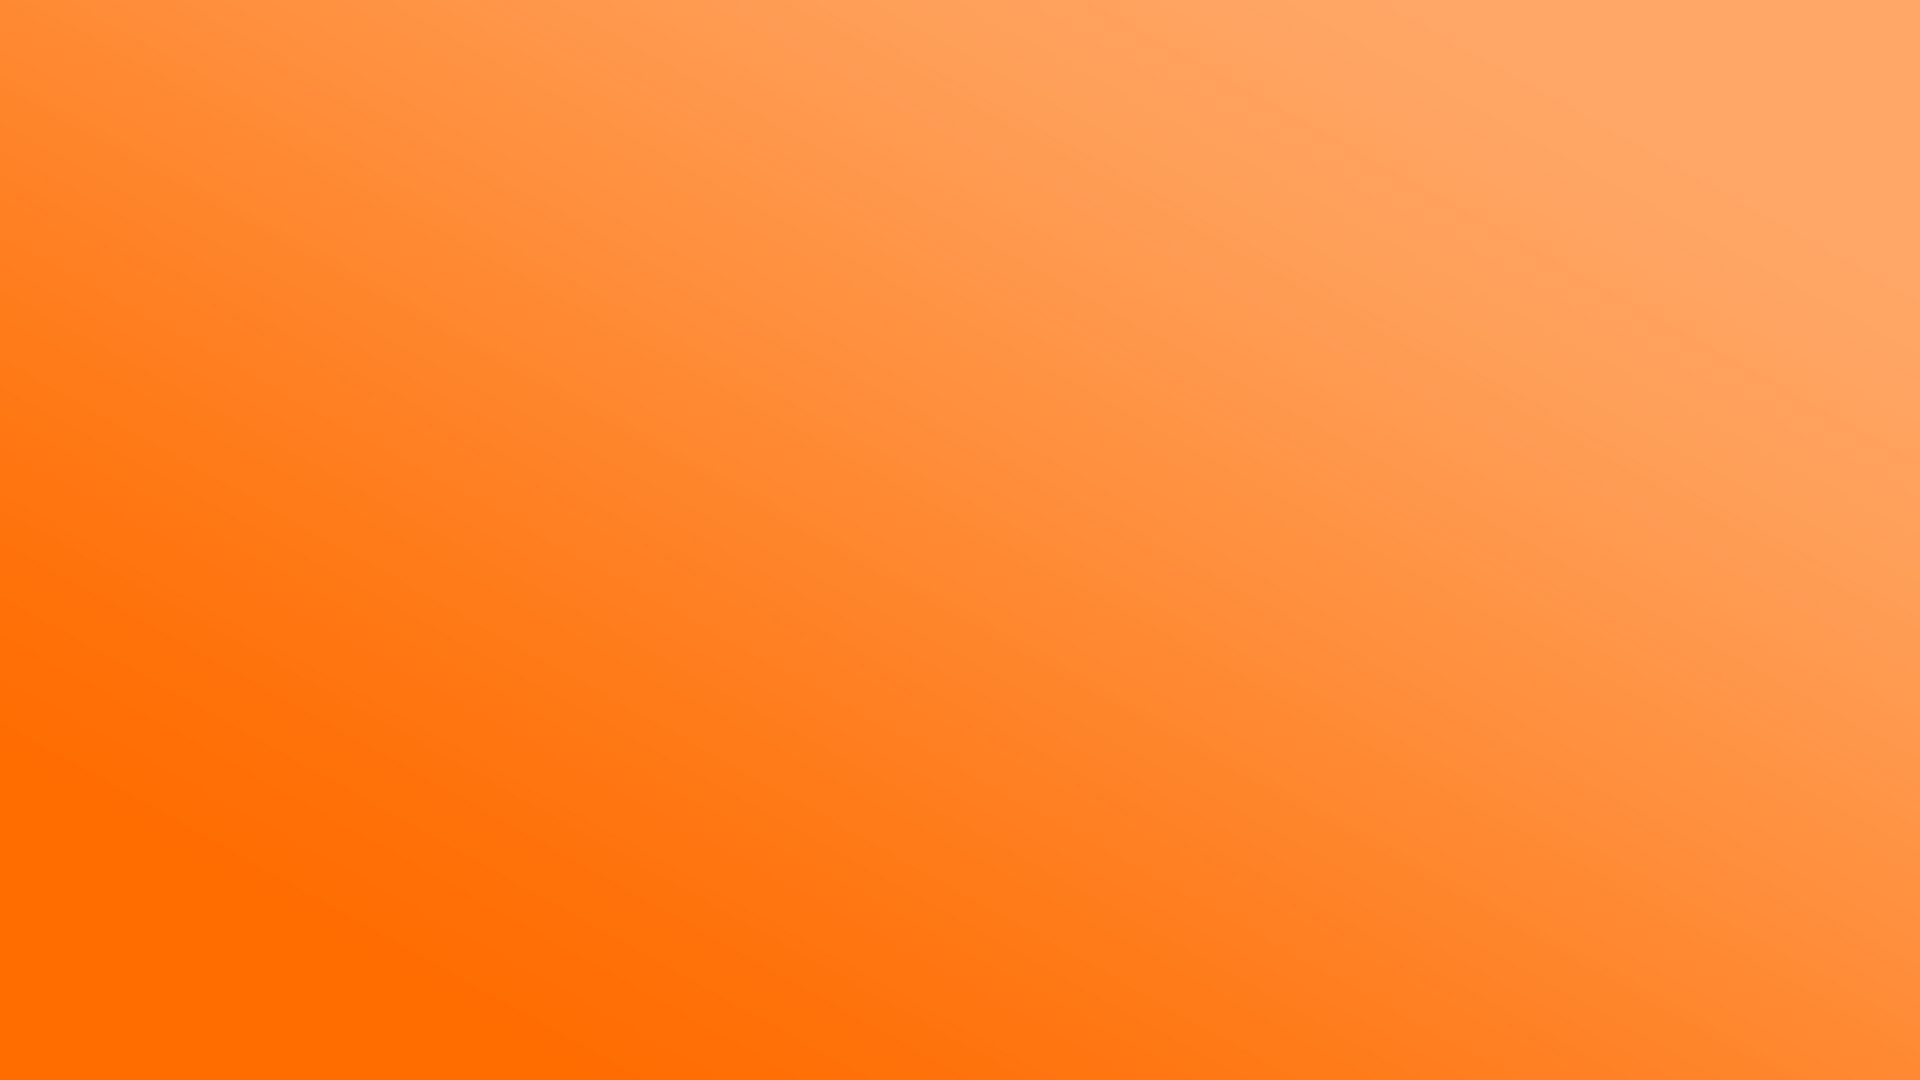 Họa tiết được phối màu hoàn hảo giữa các gam cam sáng mang đến một nét độc đáo trong thiết kế phông nền cam. Hãy chọn hình nền này để tô điểm màn hình của bạn và tận hưởng sự sống động và sáng tạo trong gam màu cam phong phú!